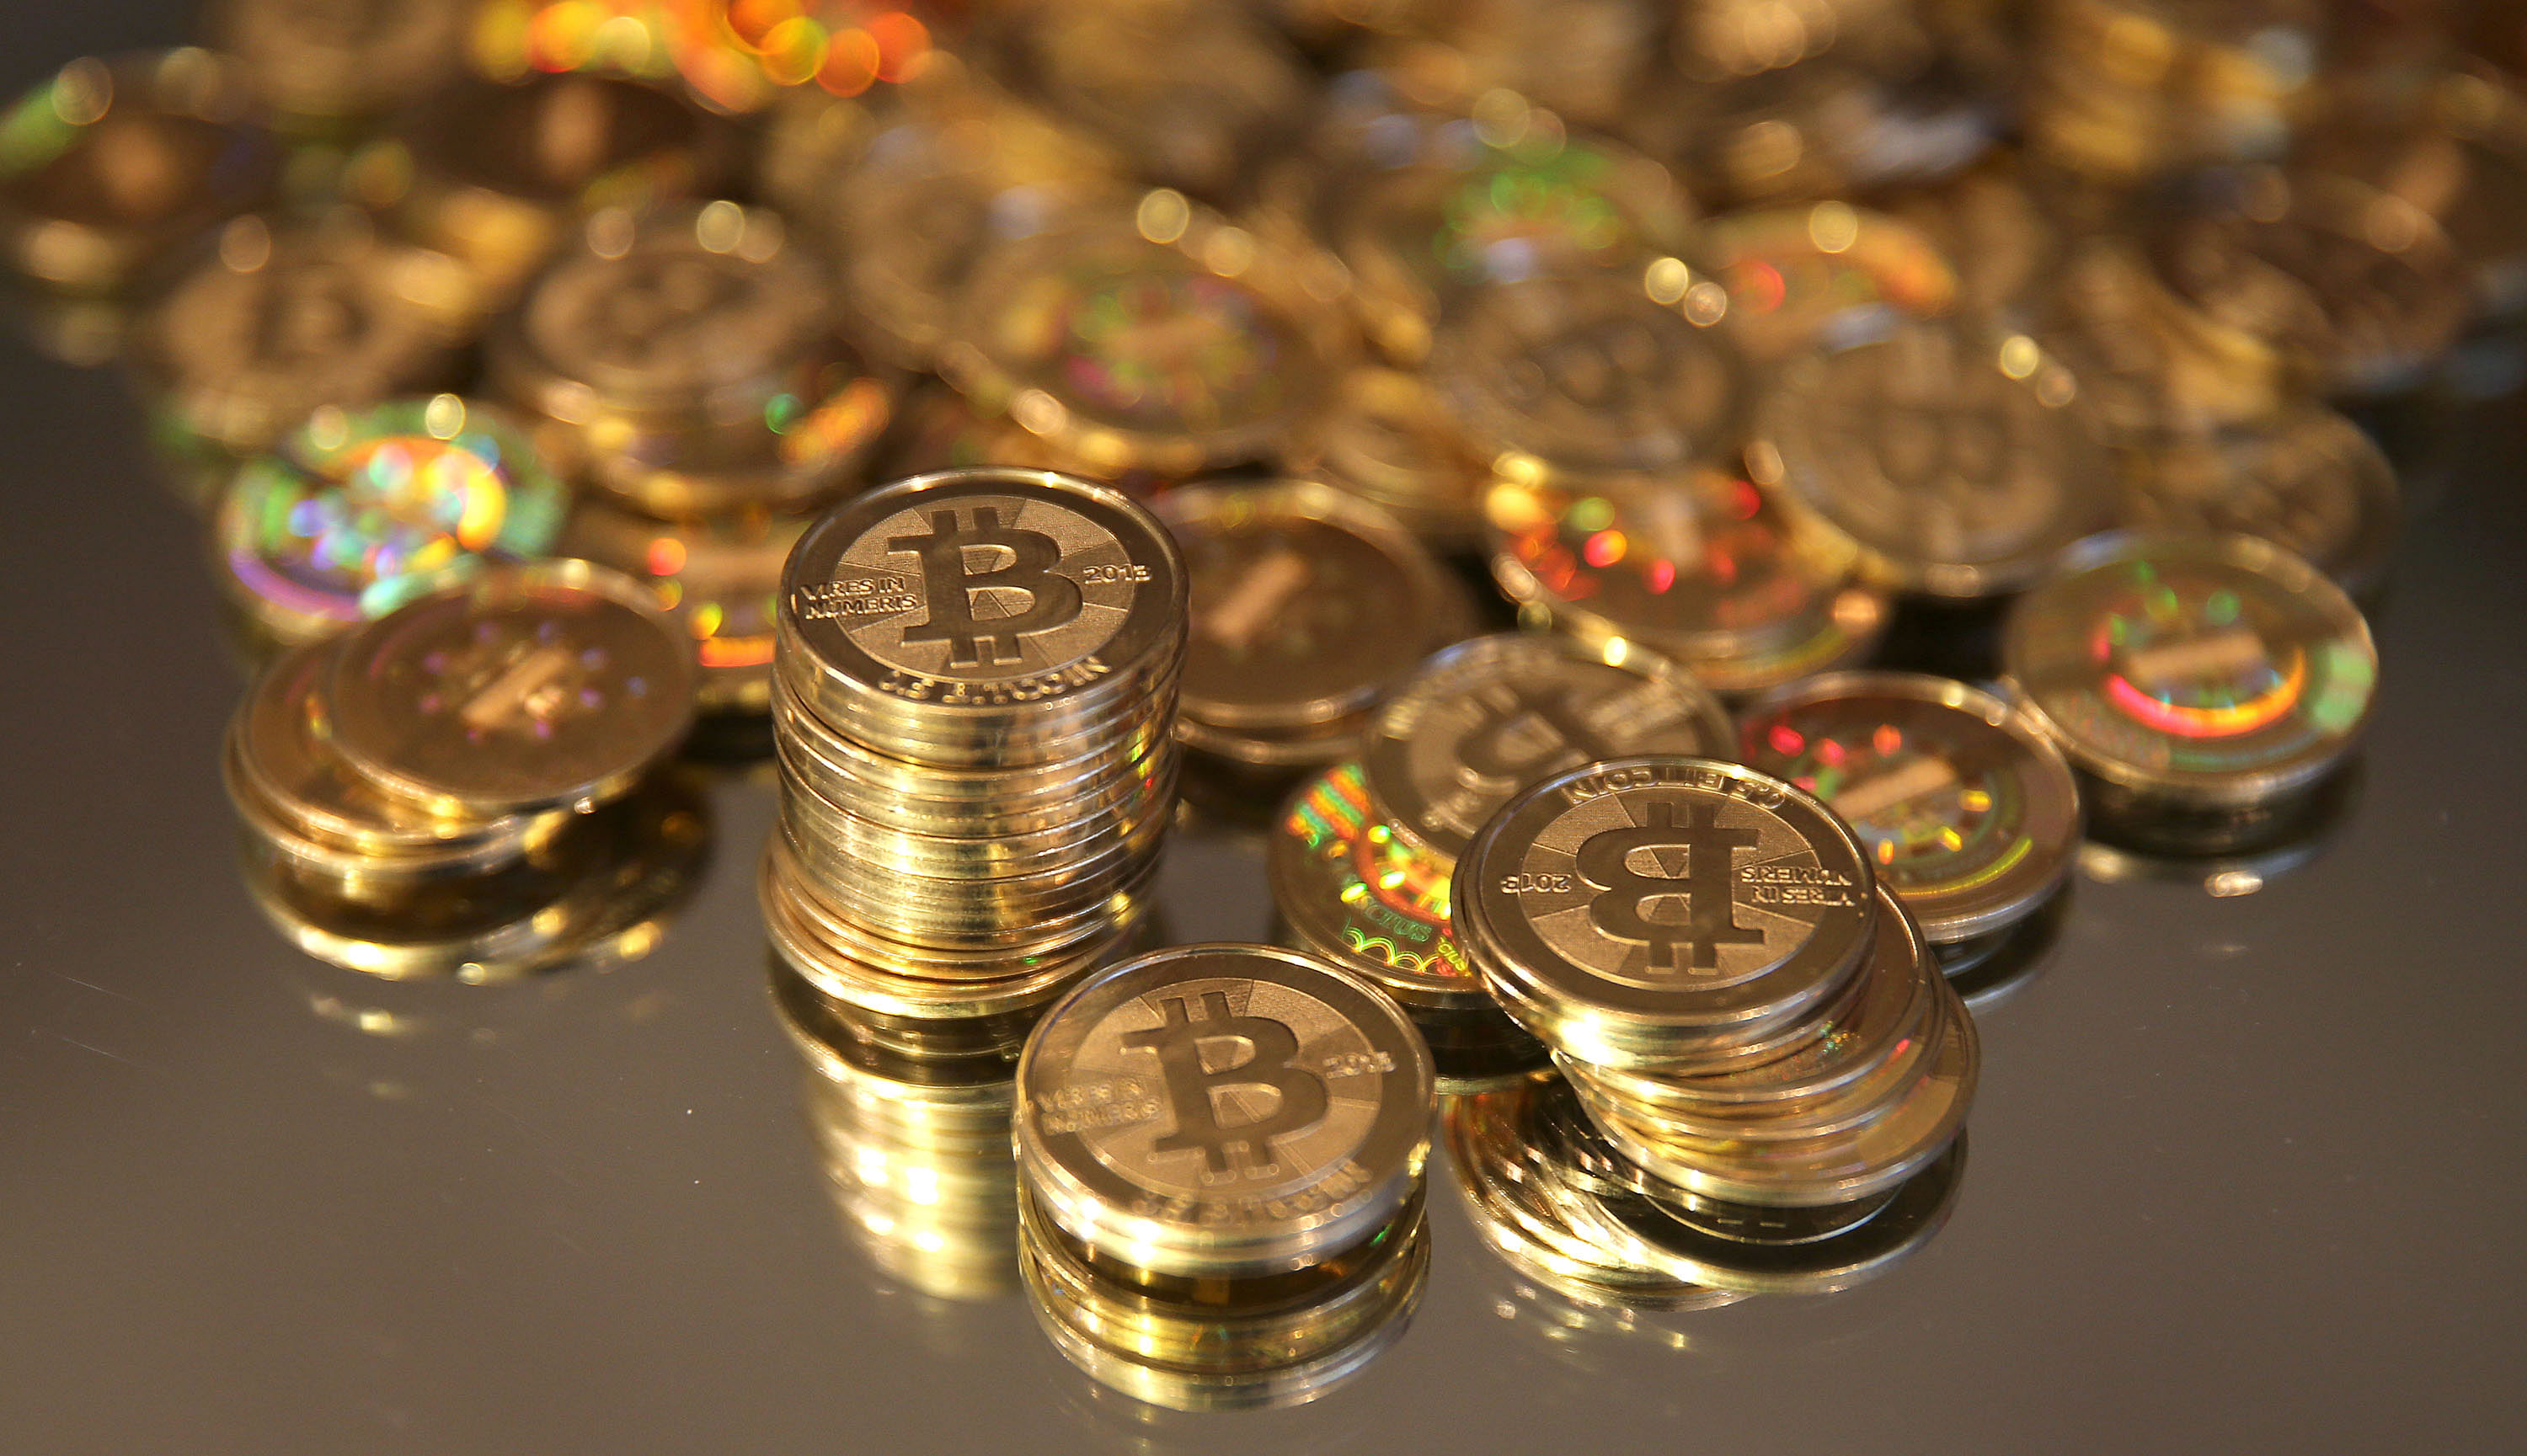 Update: Bitcoin worth US $72m stolen from Bitfinex exchange